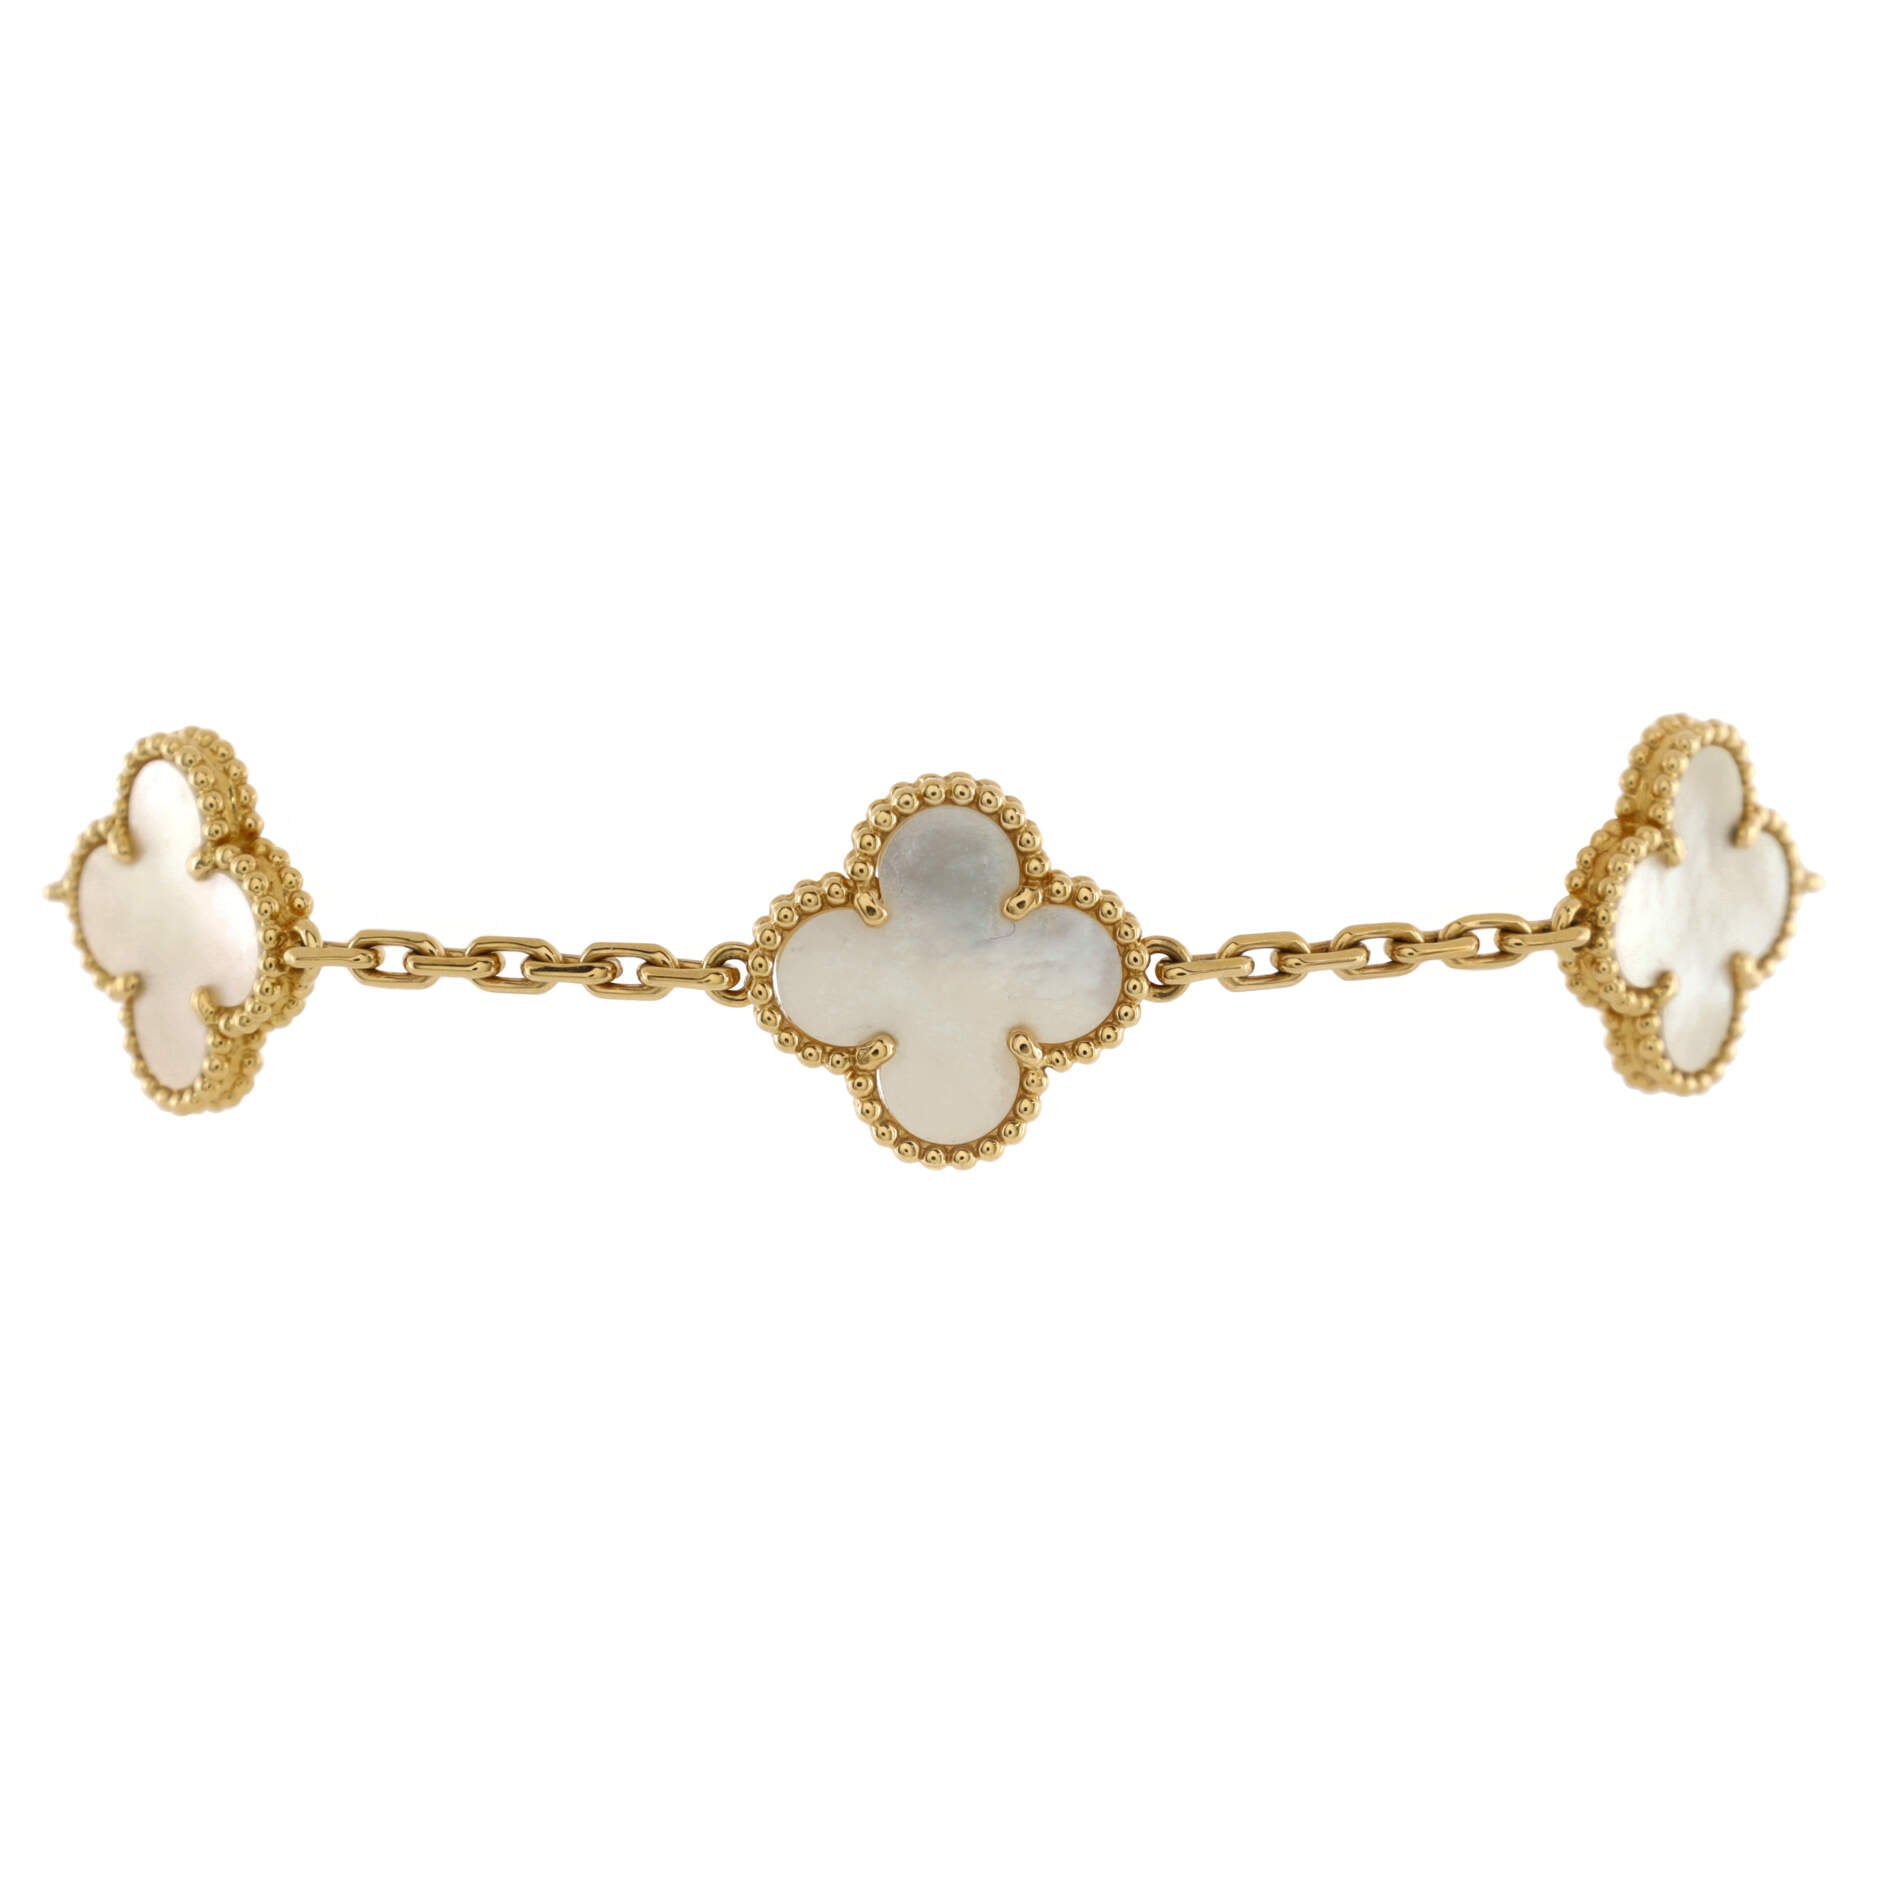 Vintage Alhambra 5 Motifs Bracelet